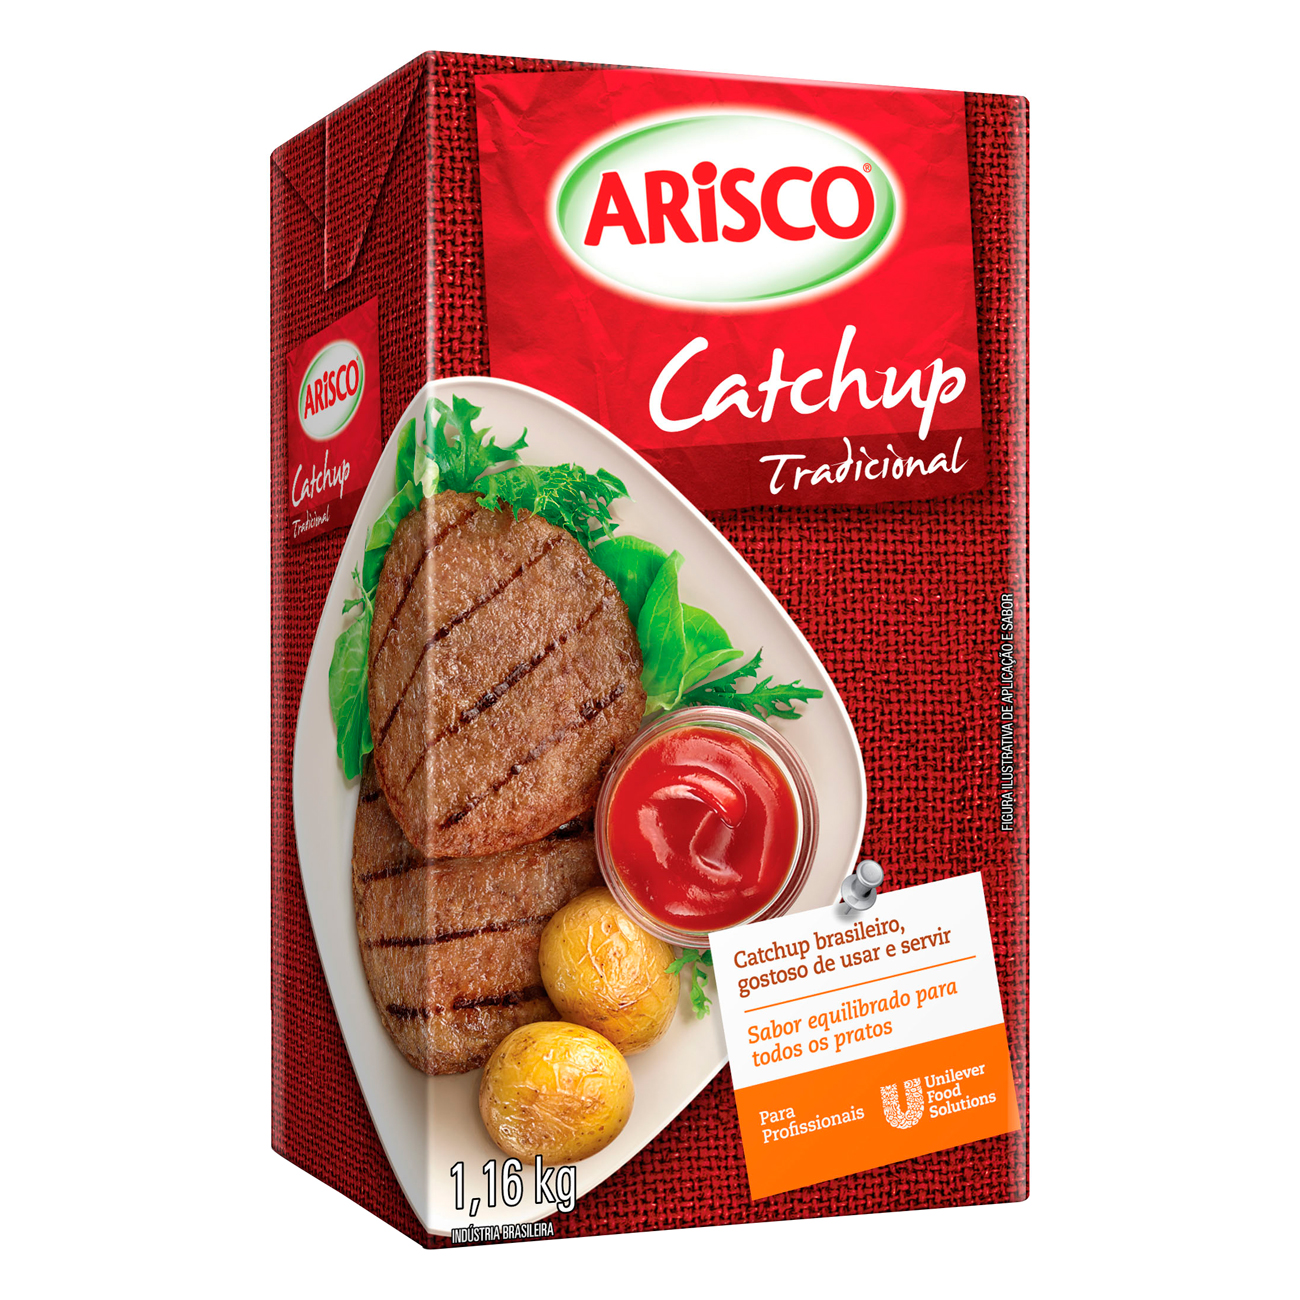 Ketchup Arisco Tradicional Tetra Pak 1,16kg